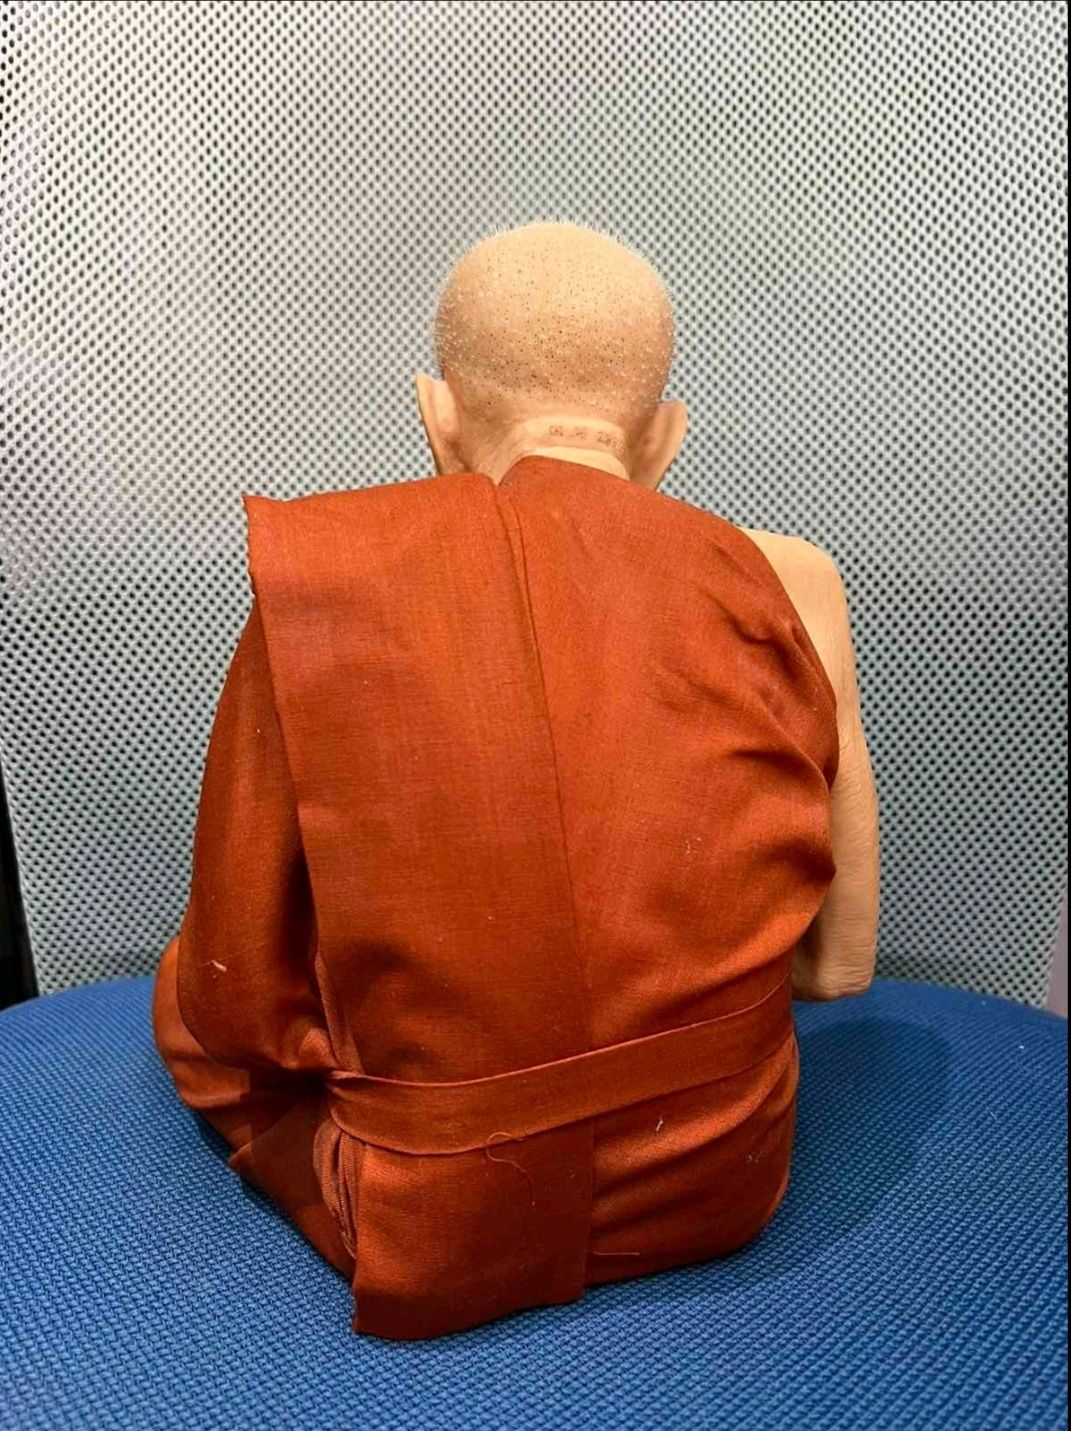 Статуэтка Буддийский святой (монах) 16см.